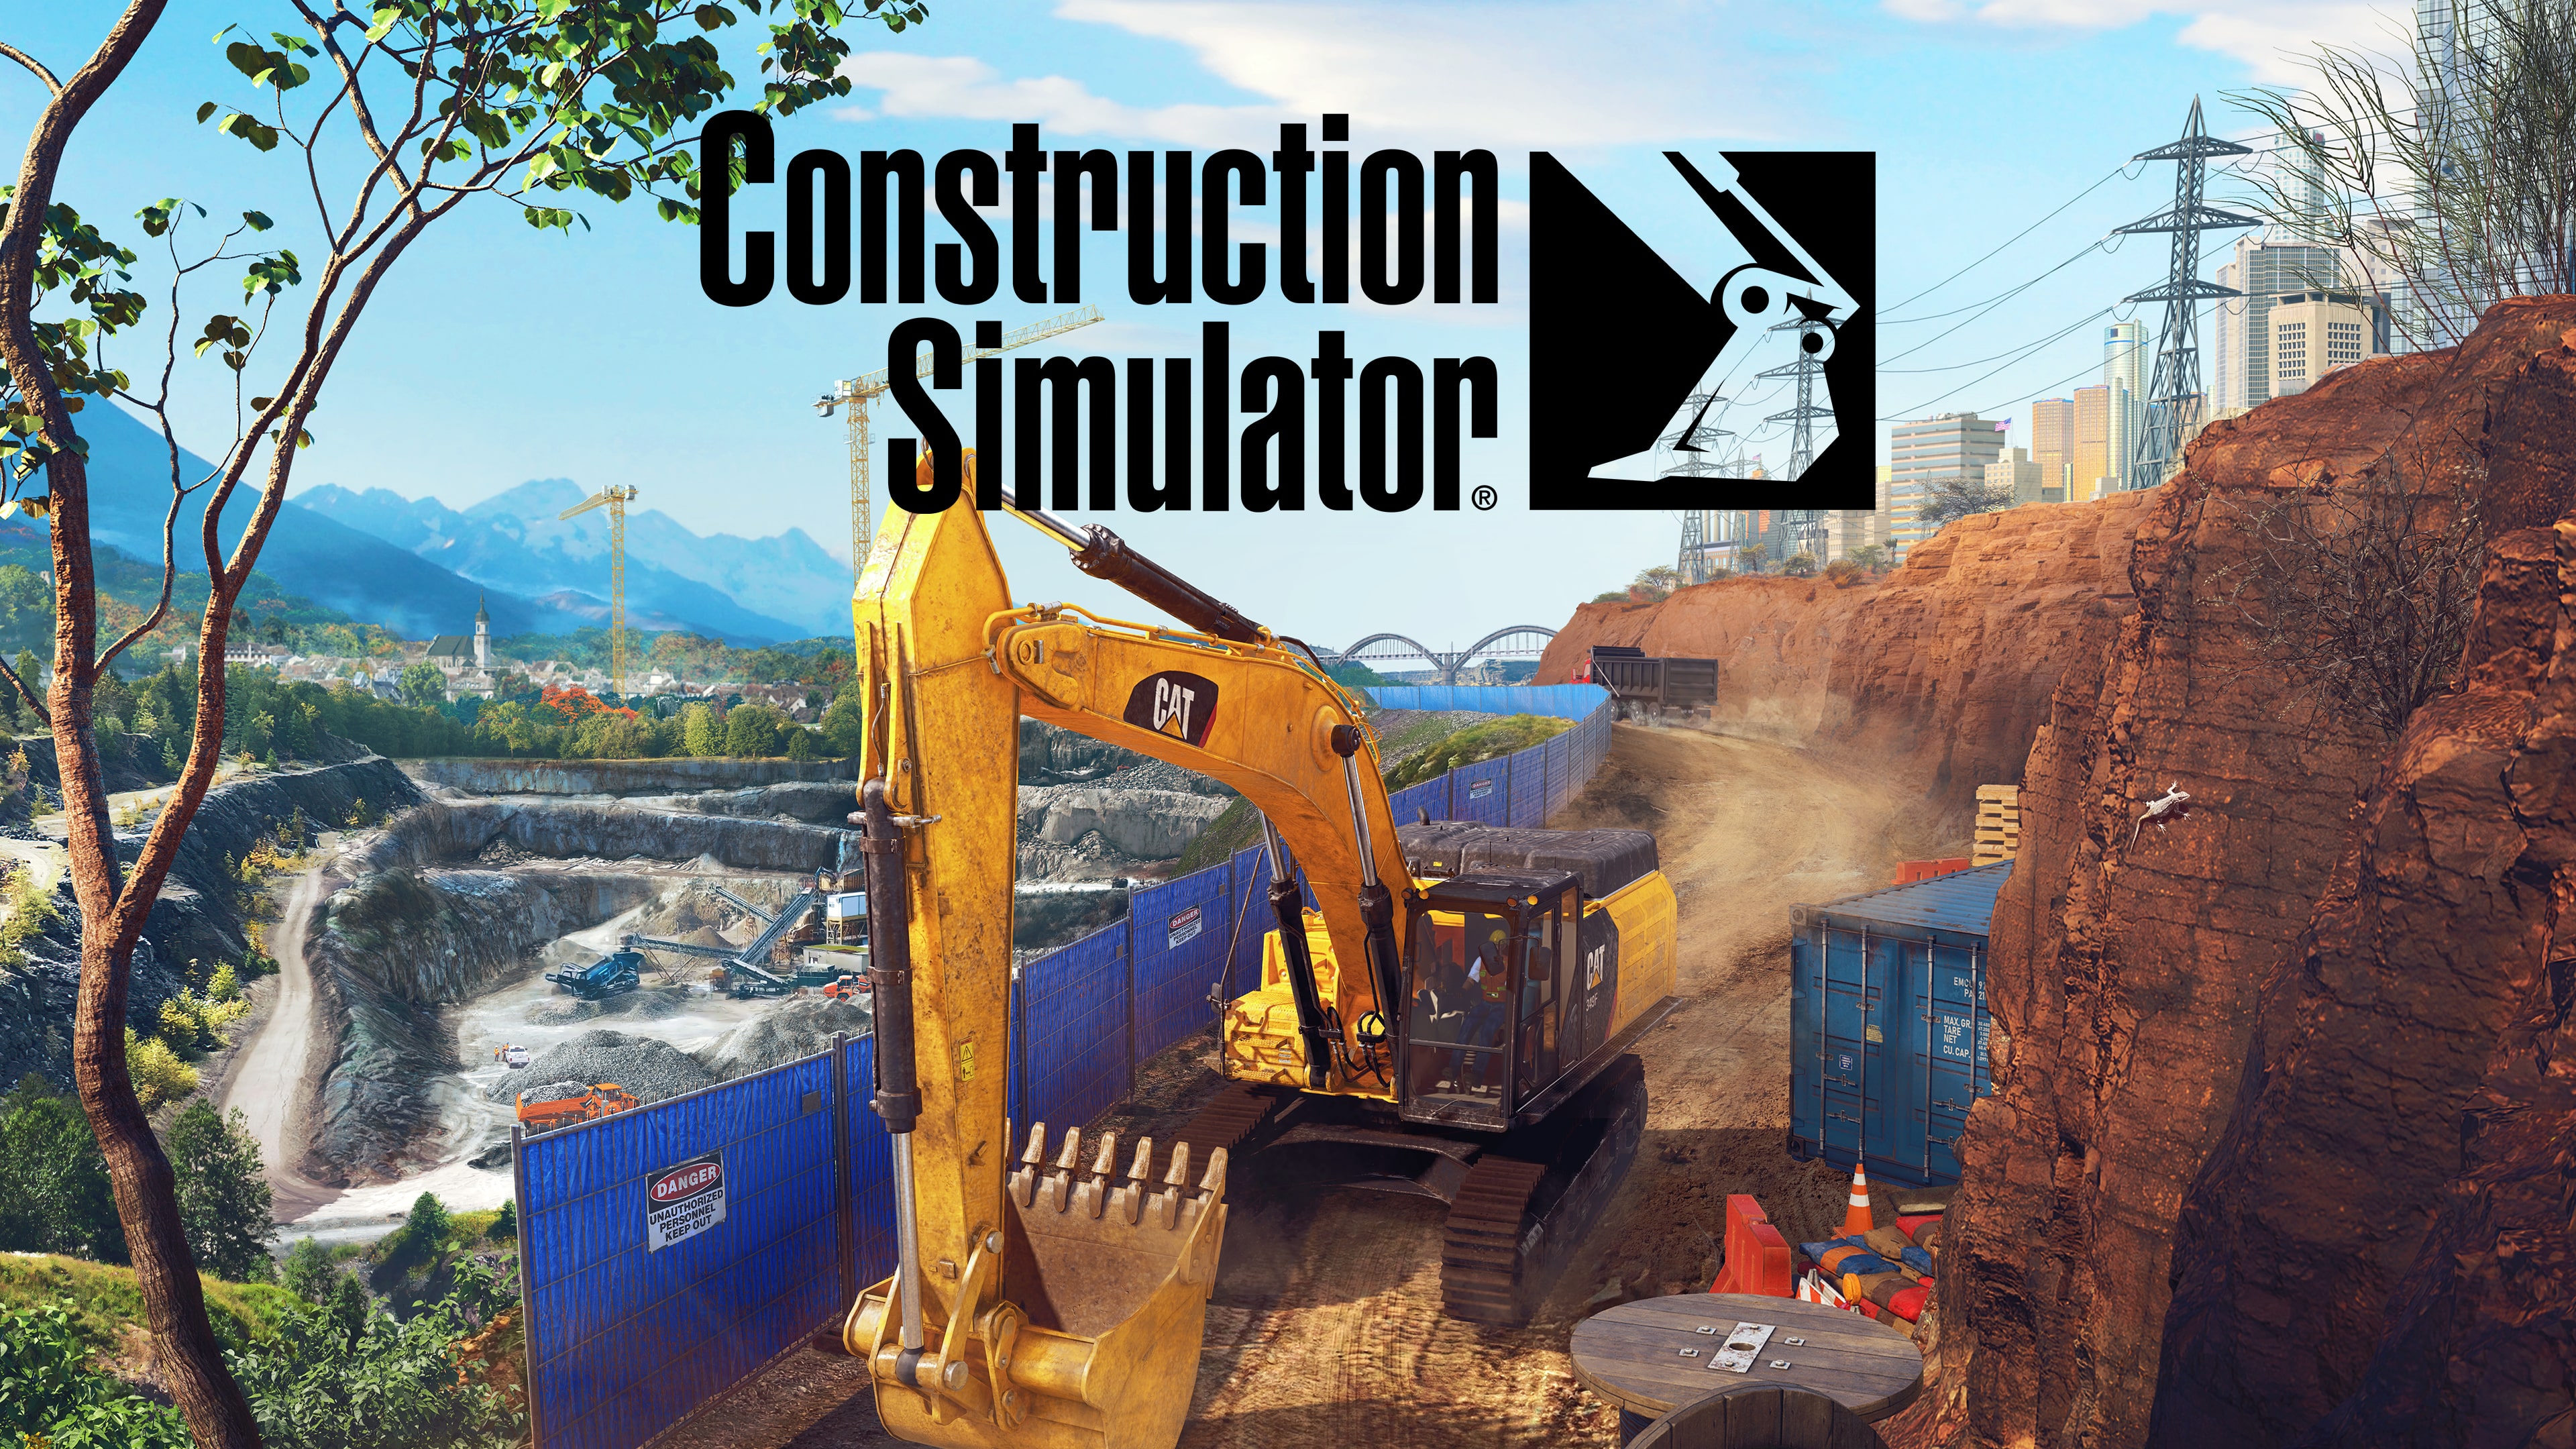 Construction Simulator (日语, 韩语, 简体中文, 繁体中文, 英语)